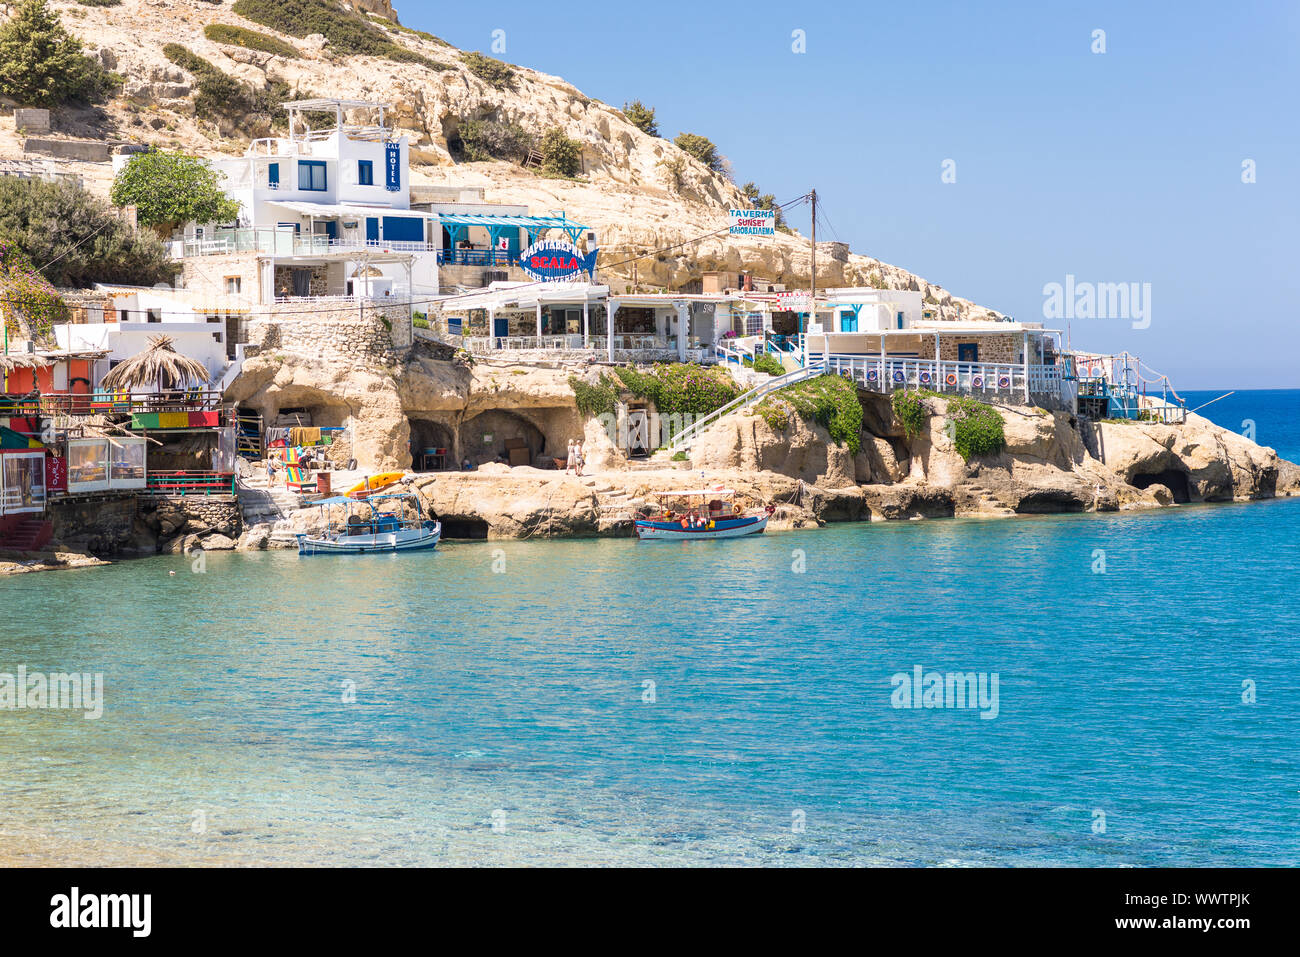 Restaurantes, bares y viviendas de la bahía de Matala, en el centro-sur de Creta. Foto de stock